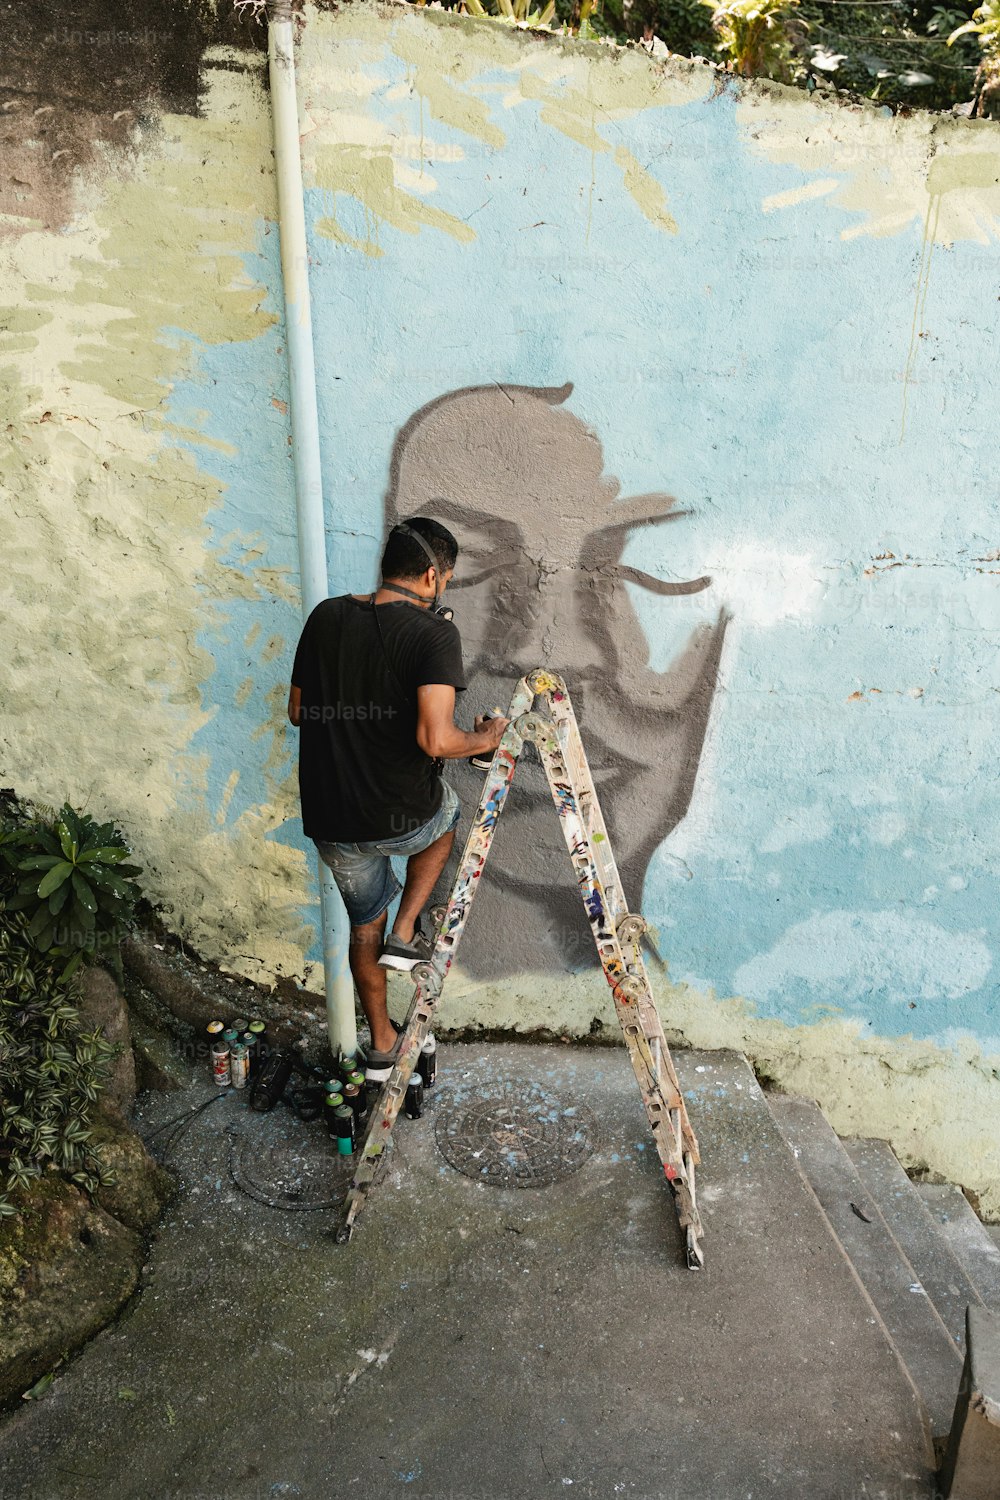 Un hombre está pintando un mural en una pared